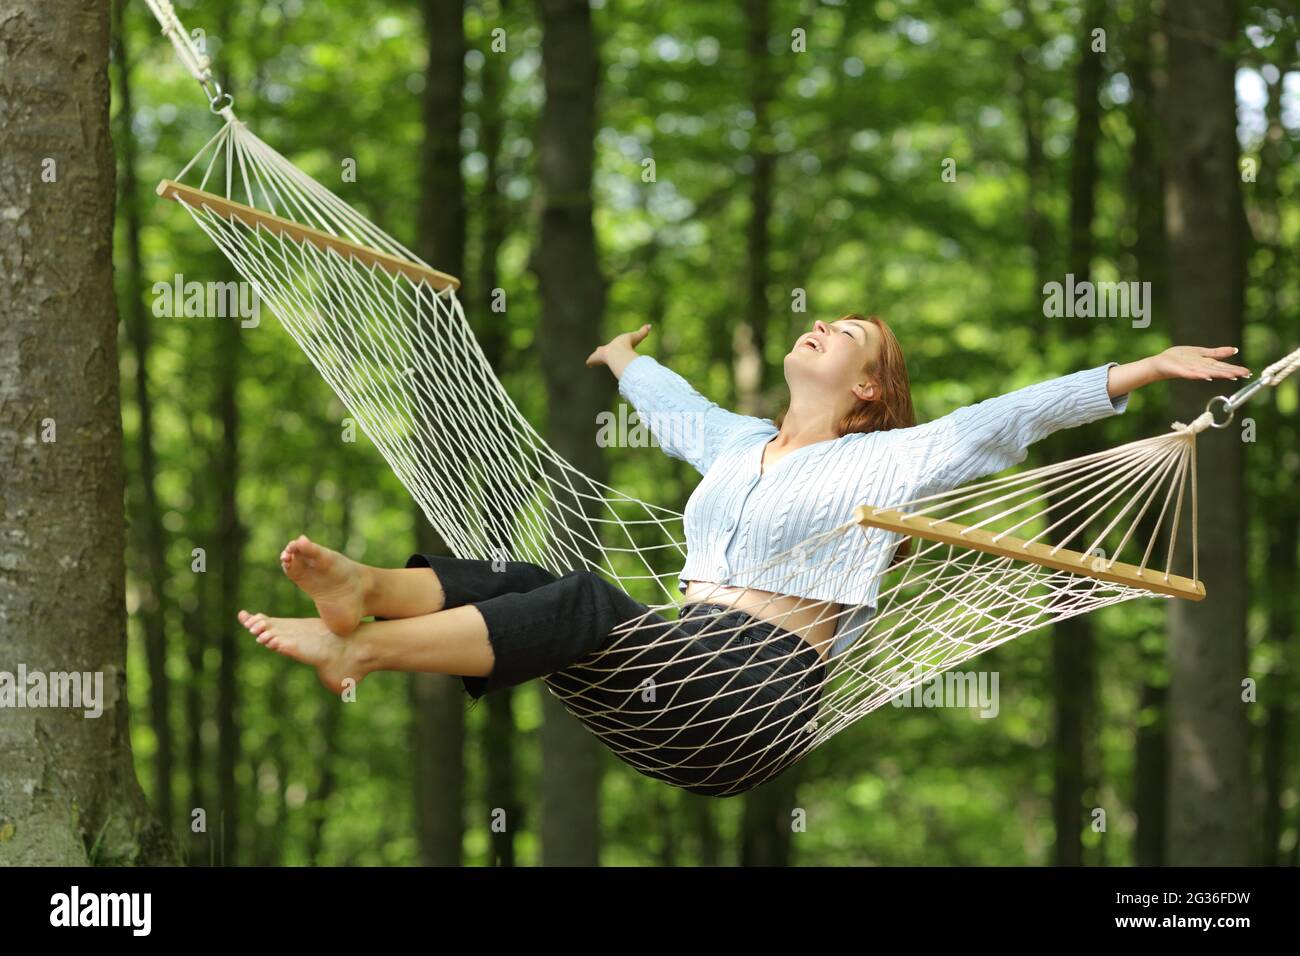 Une femme heureuse se balançant sur un hamac dépassant les bras dans une forêt Banque D'Images